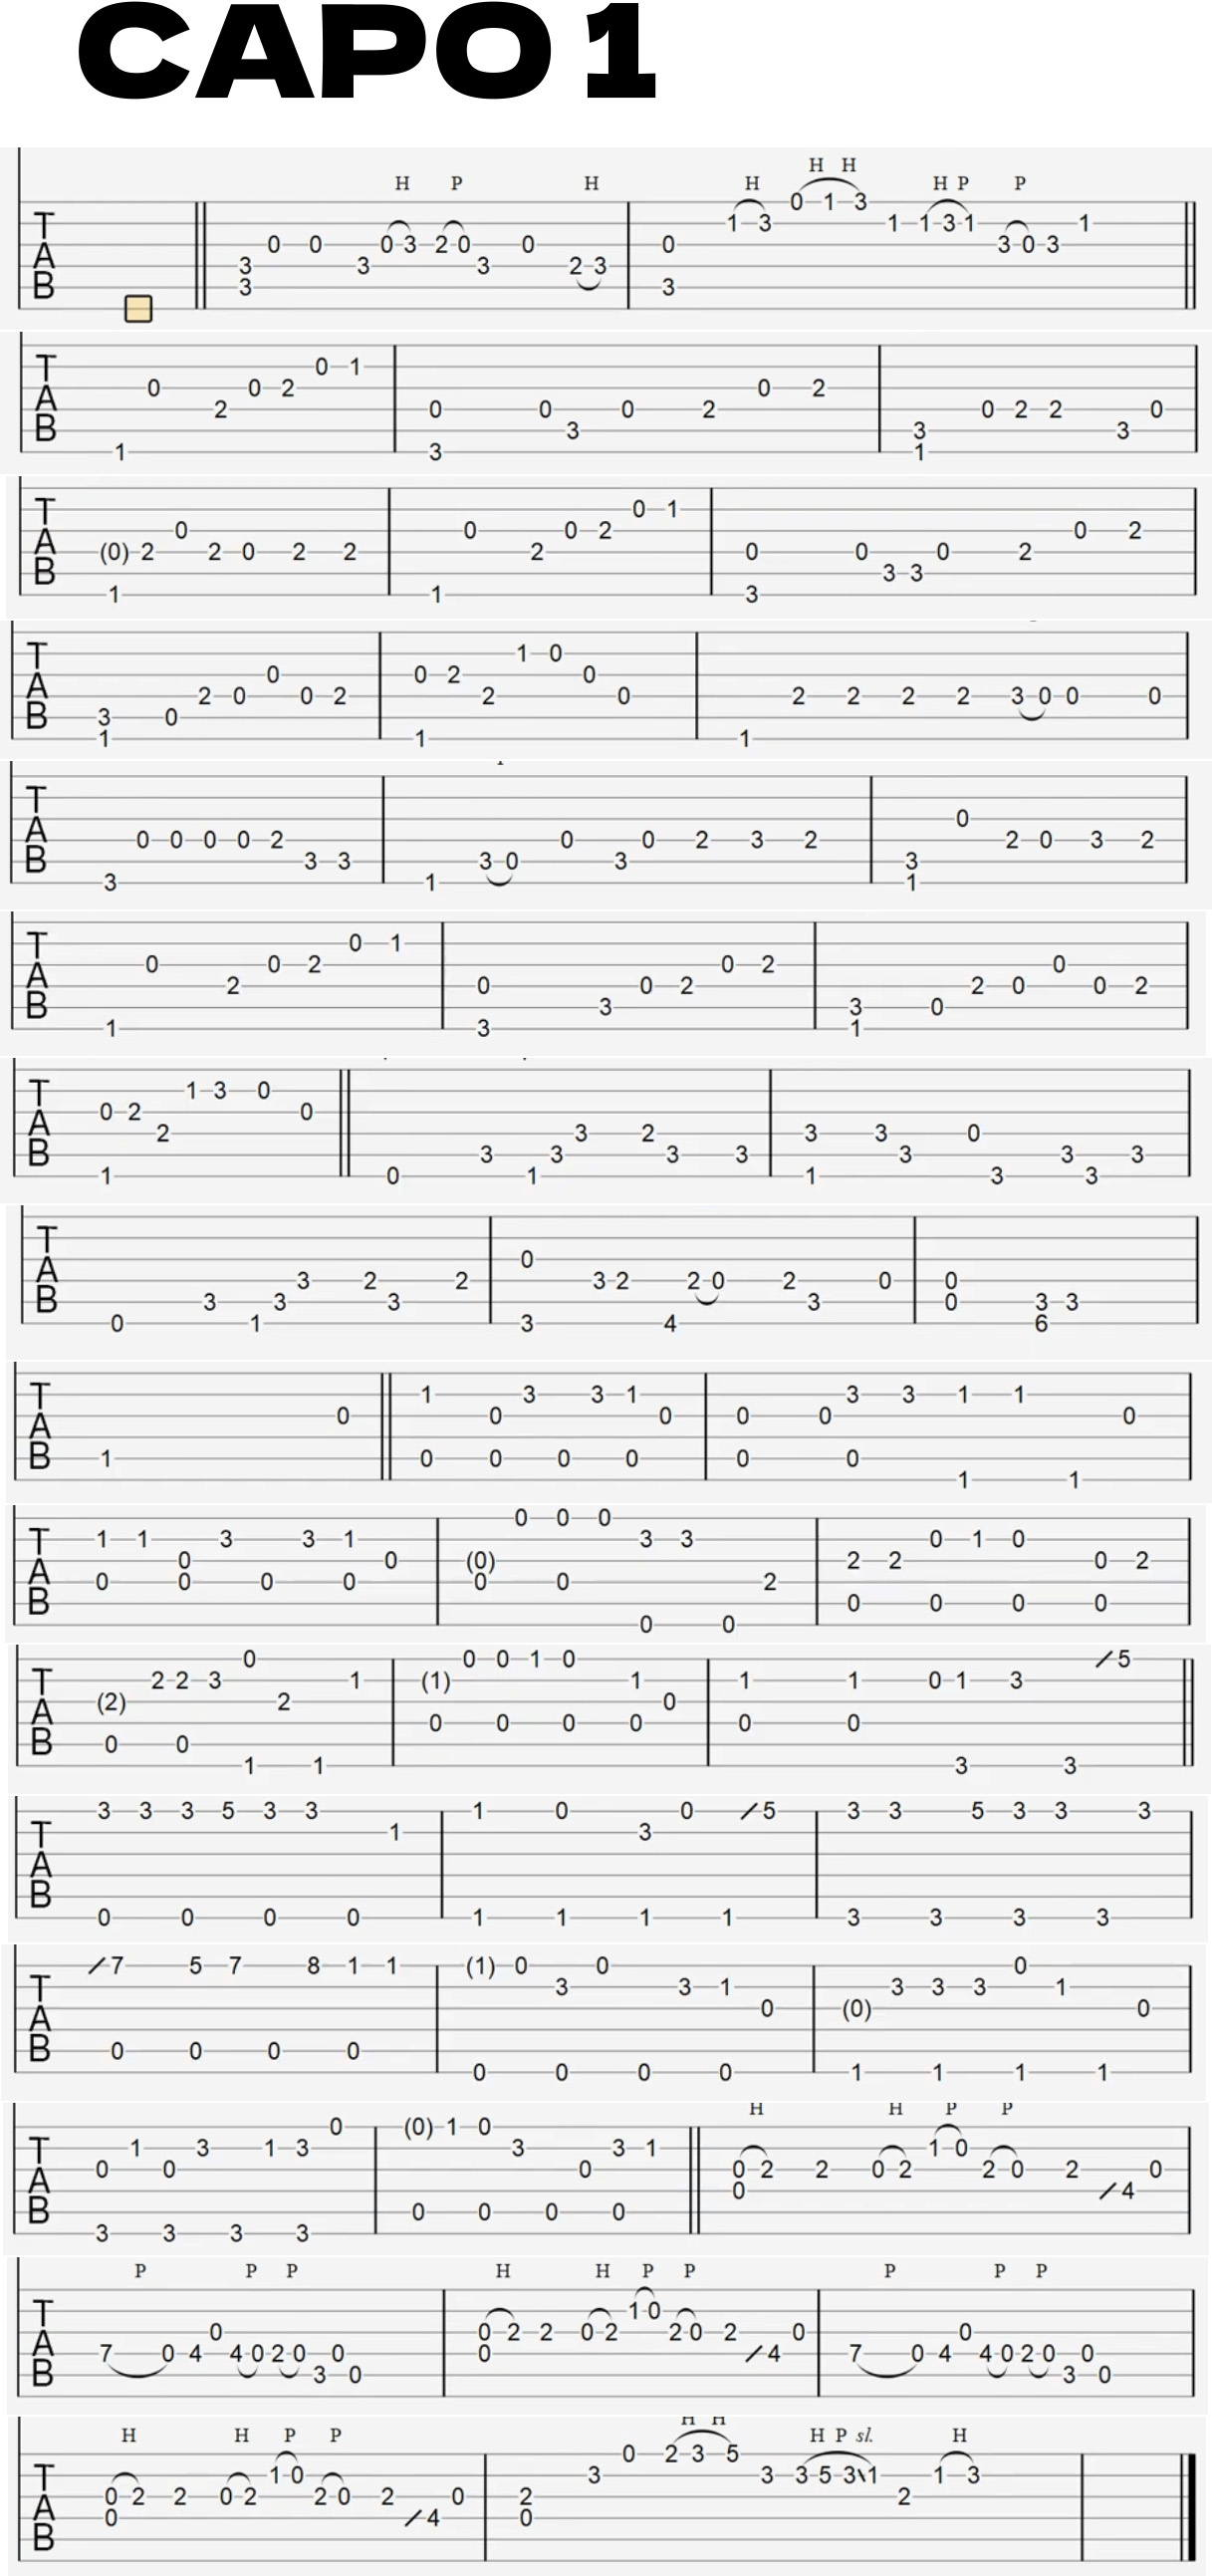 迷宫饭 - Sleep Walking Orchestra吉他谱(图片谱,指弹,木吉他,solo)_动漫游戏(ACG)_Sleep Walking Orchestra.jpg